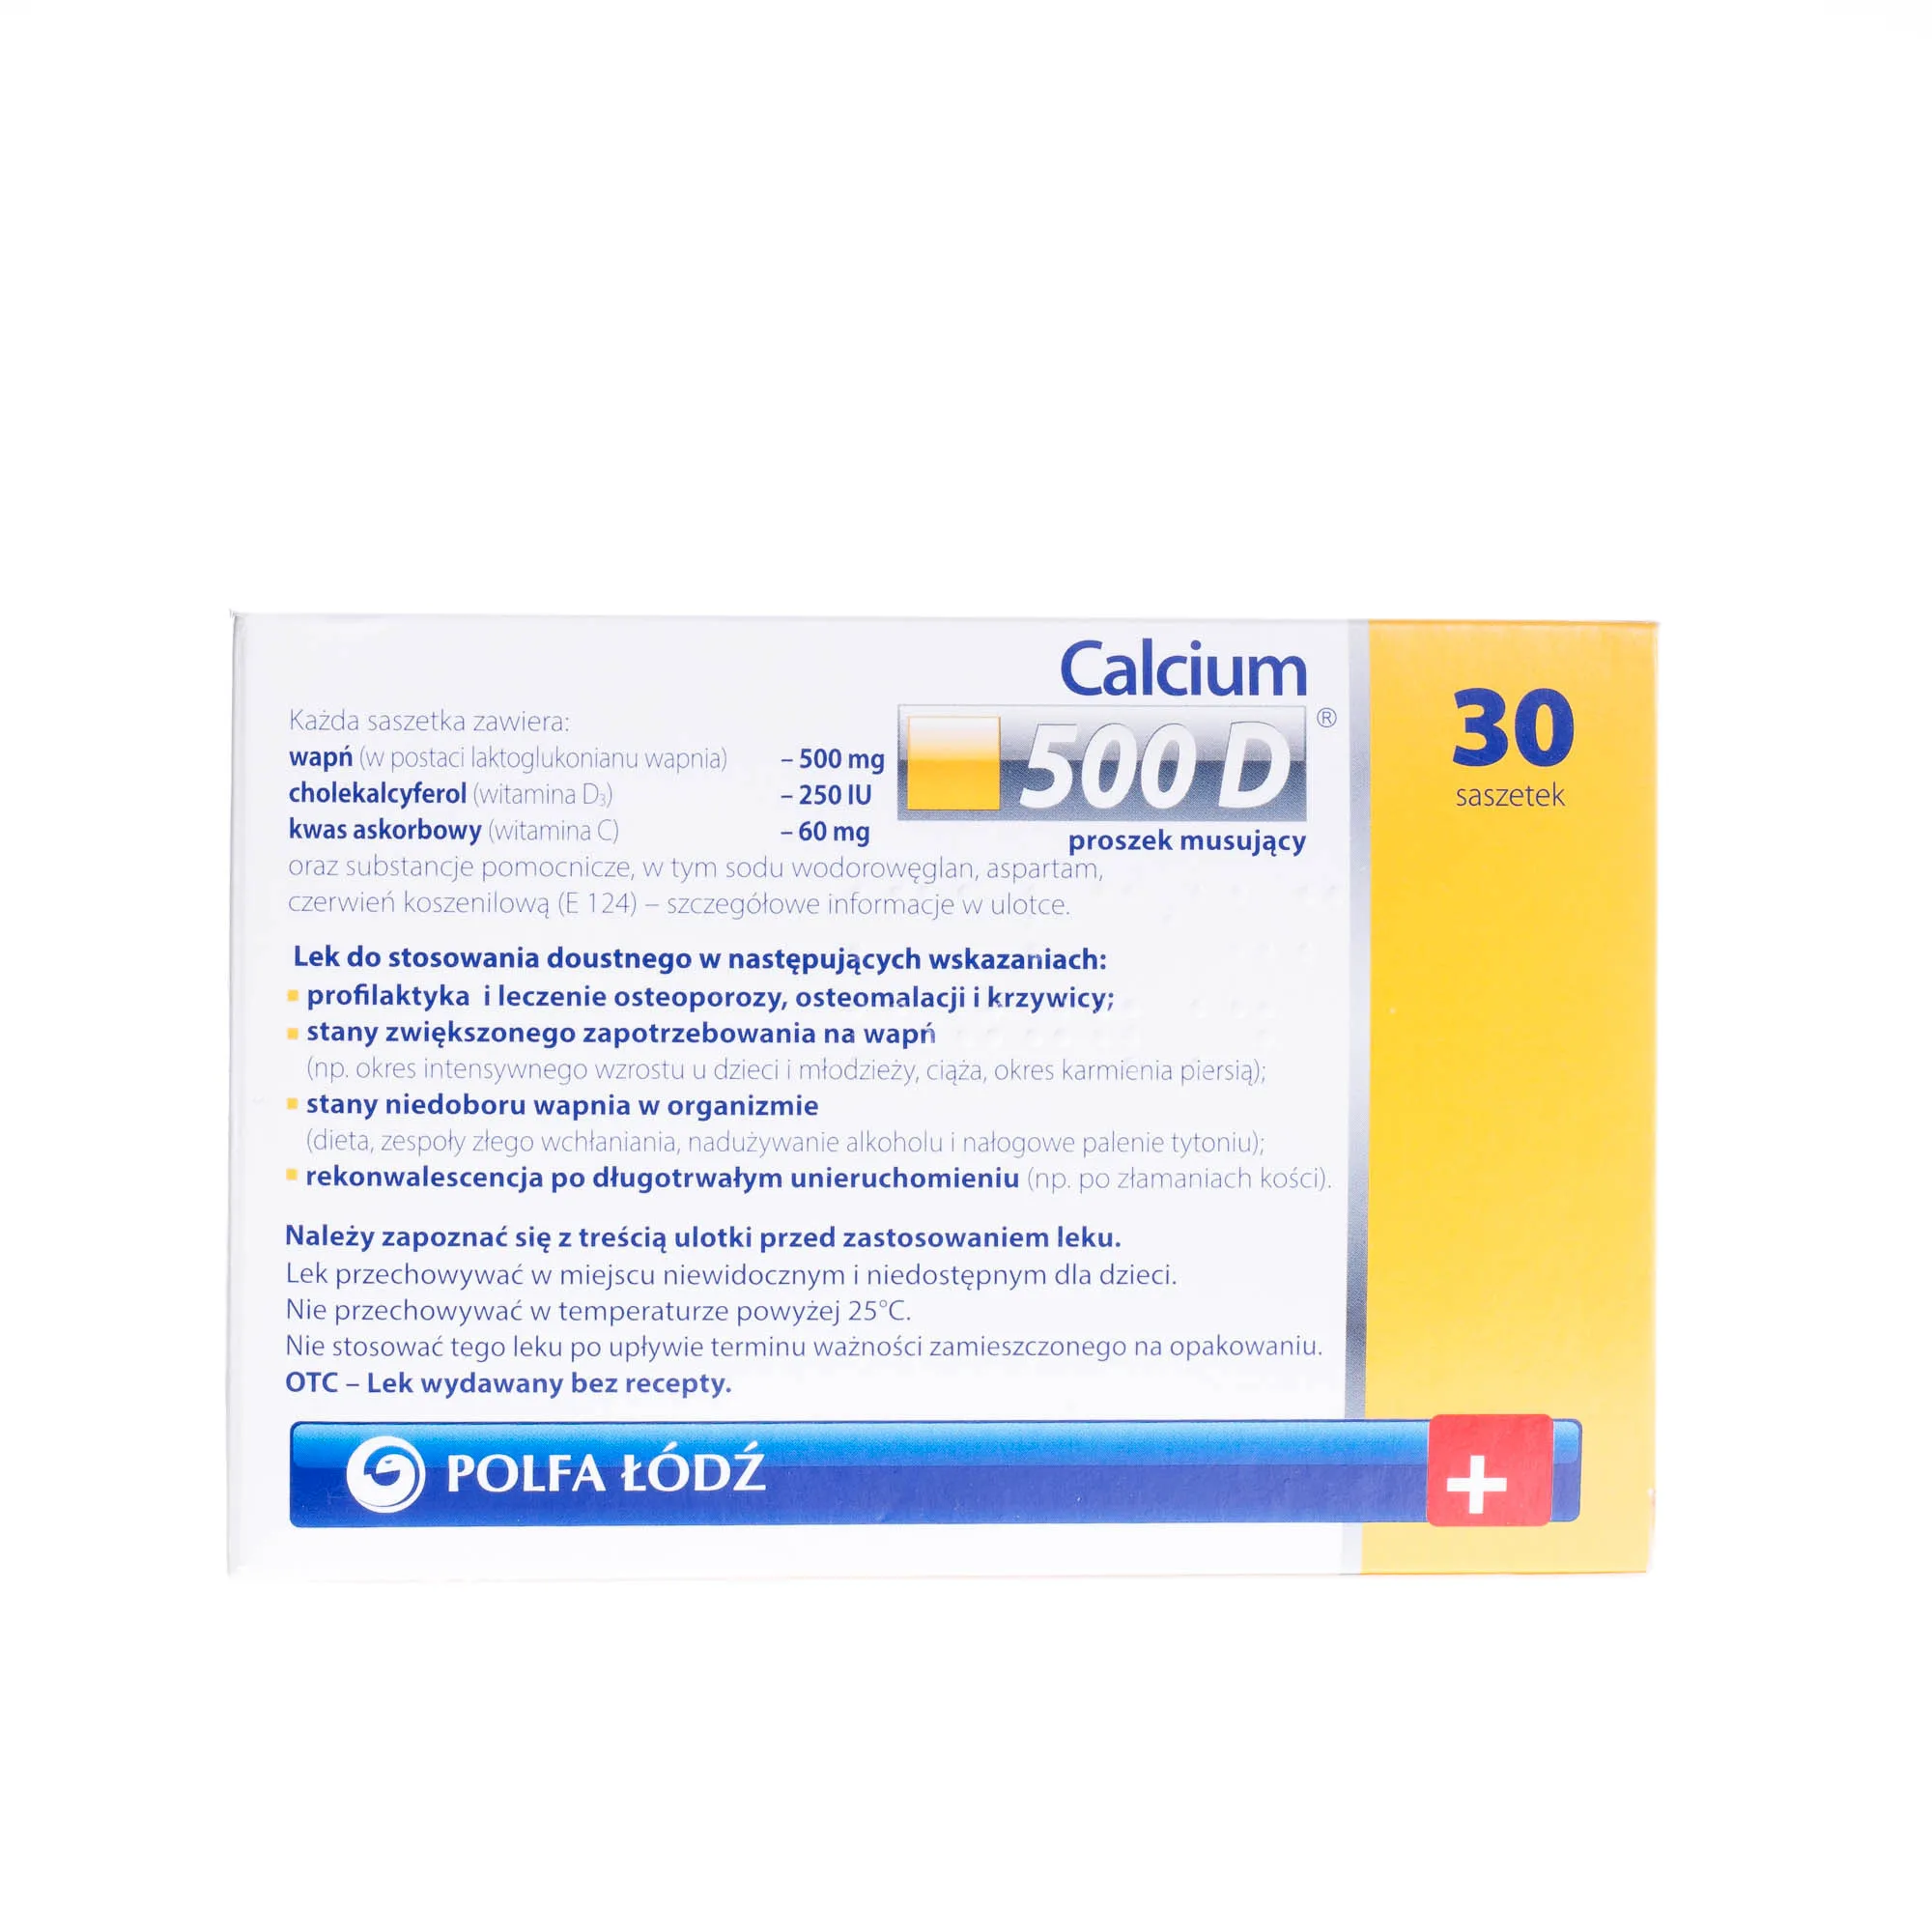 Calcium 500 D 500mg + 250 IU + 60 mg - 30 saszetek z proszkiem musującym stosowanym przy różnego schorzeniach wynikających z niedoboru wapnia 